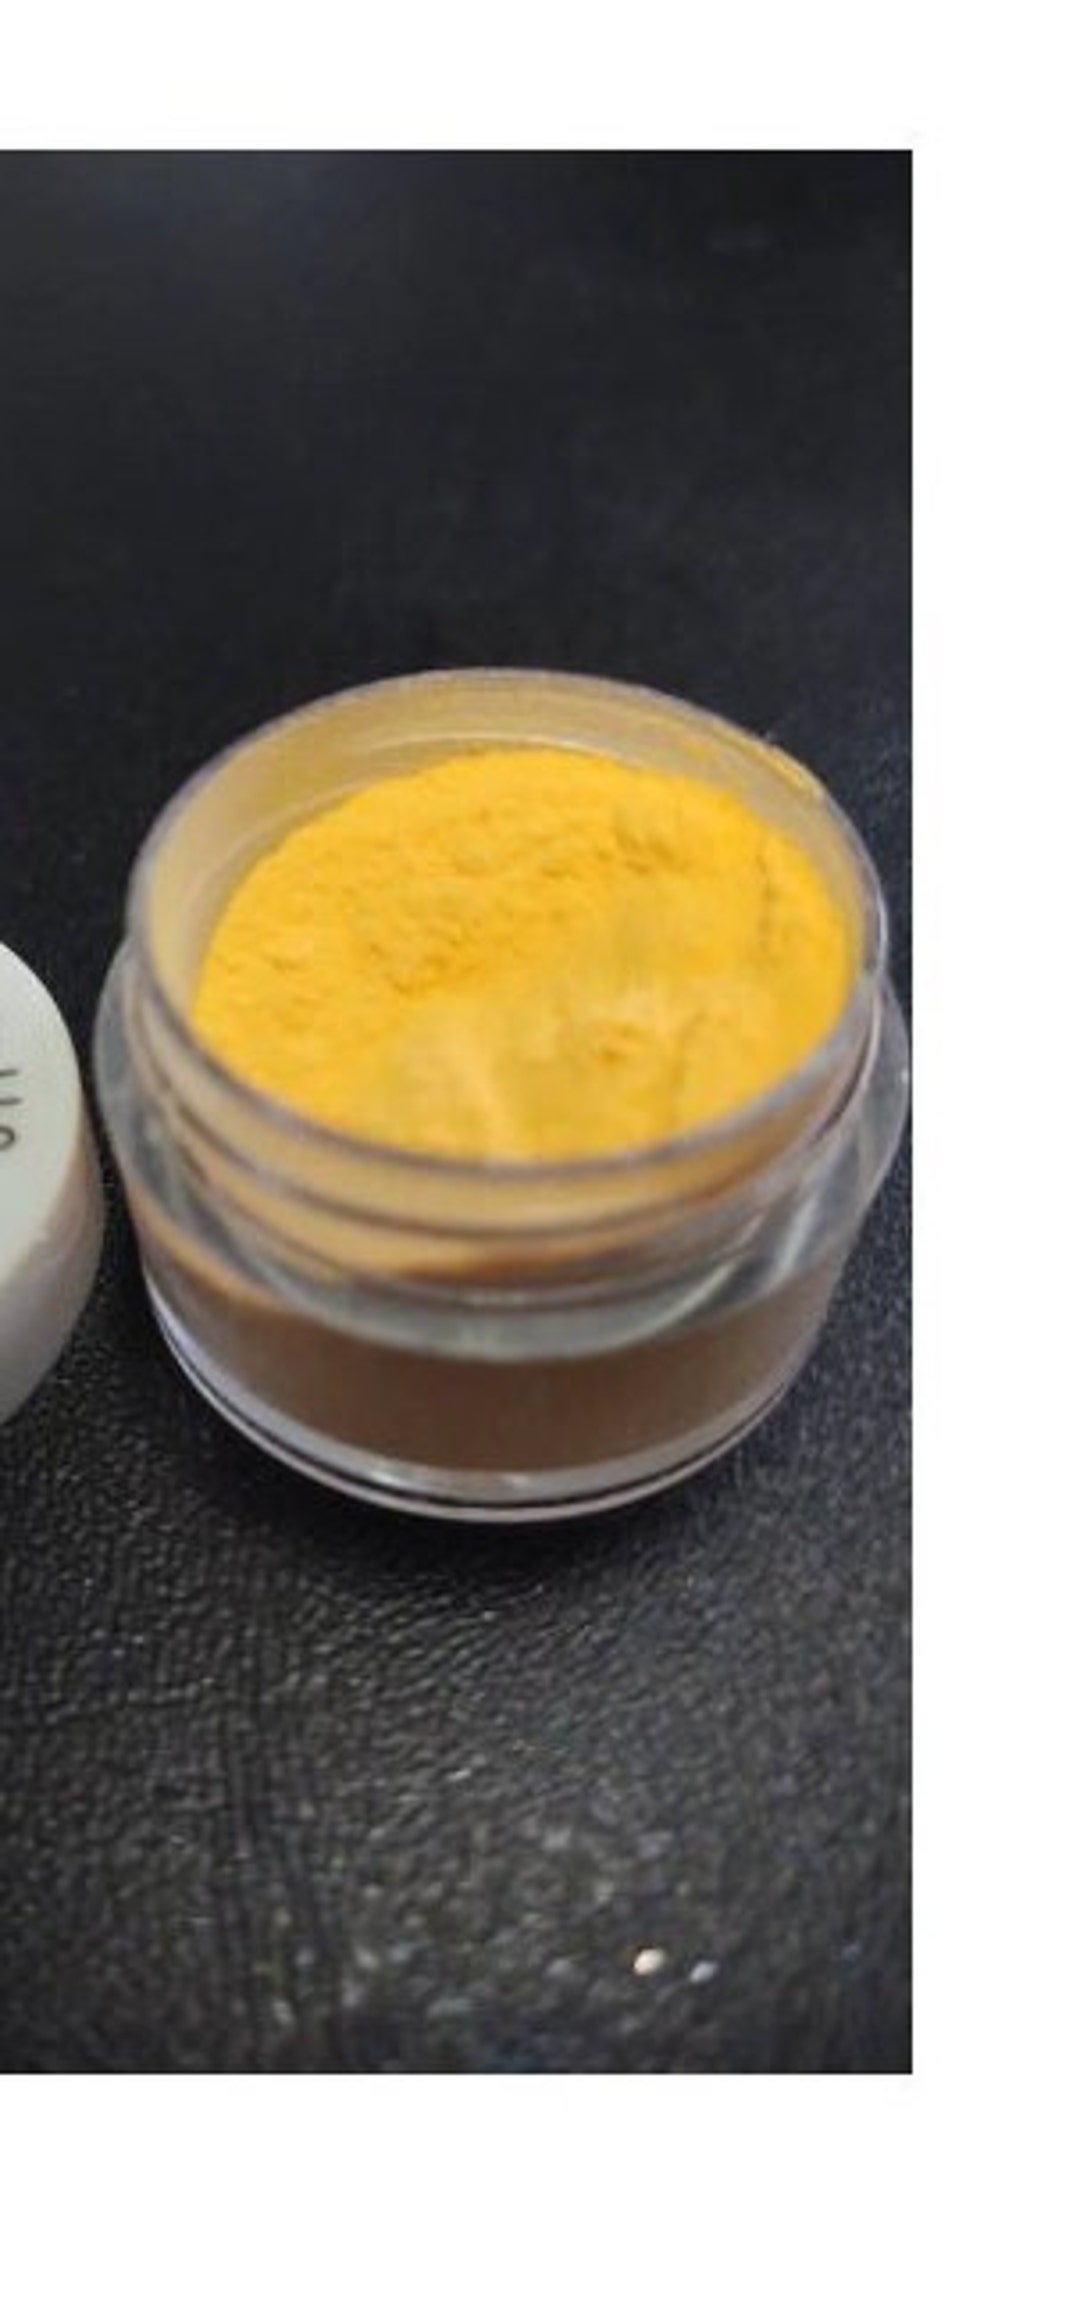 Yellow Pearlescent Mica Powder 5g. KOLORTEK Cosmetic Grade 